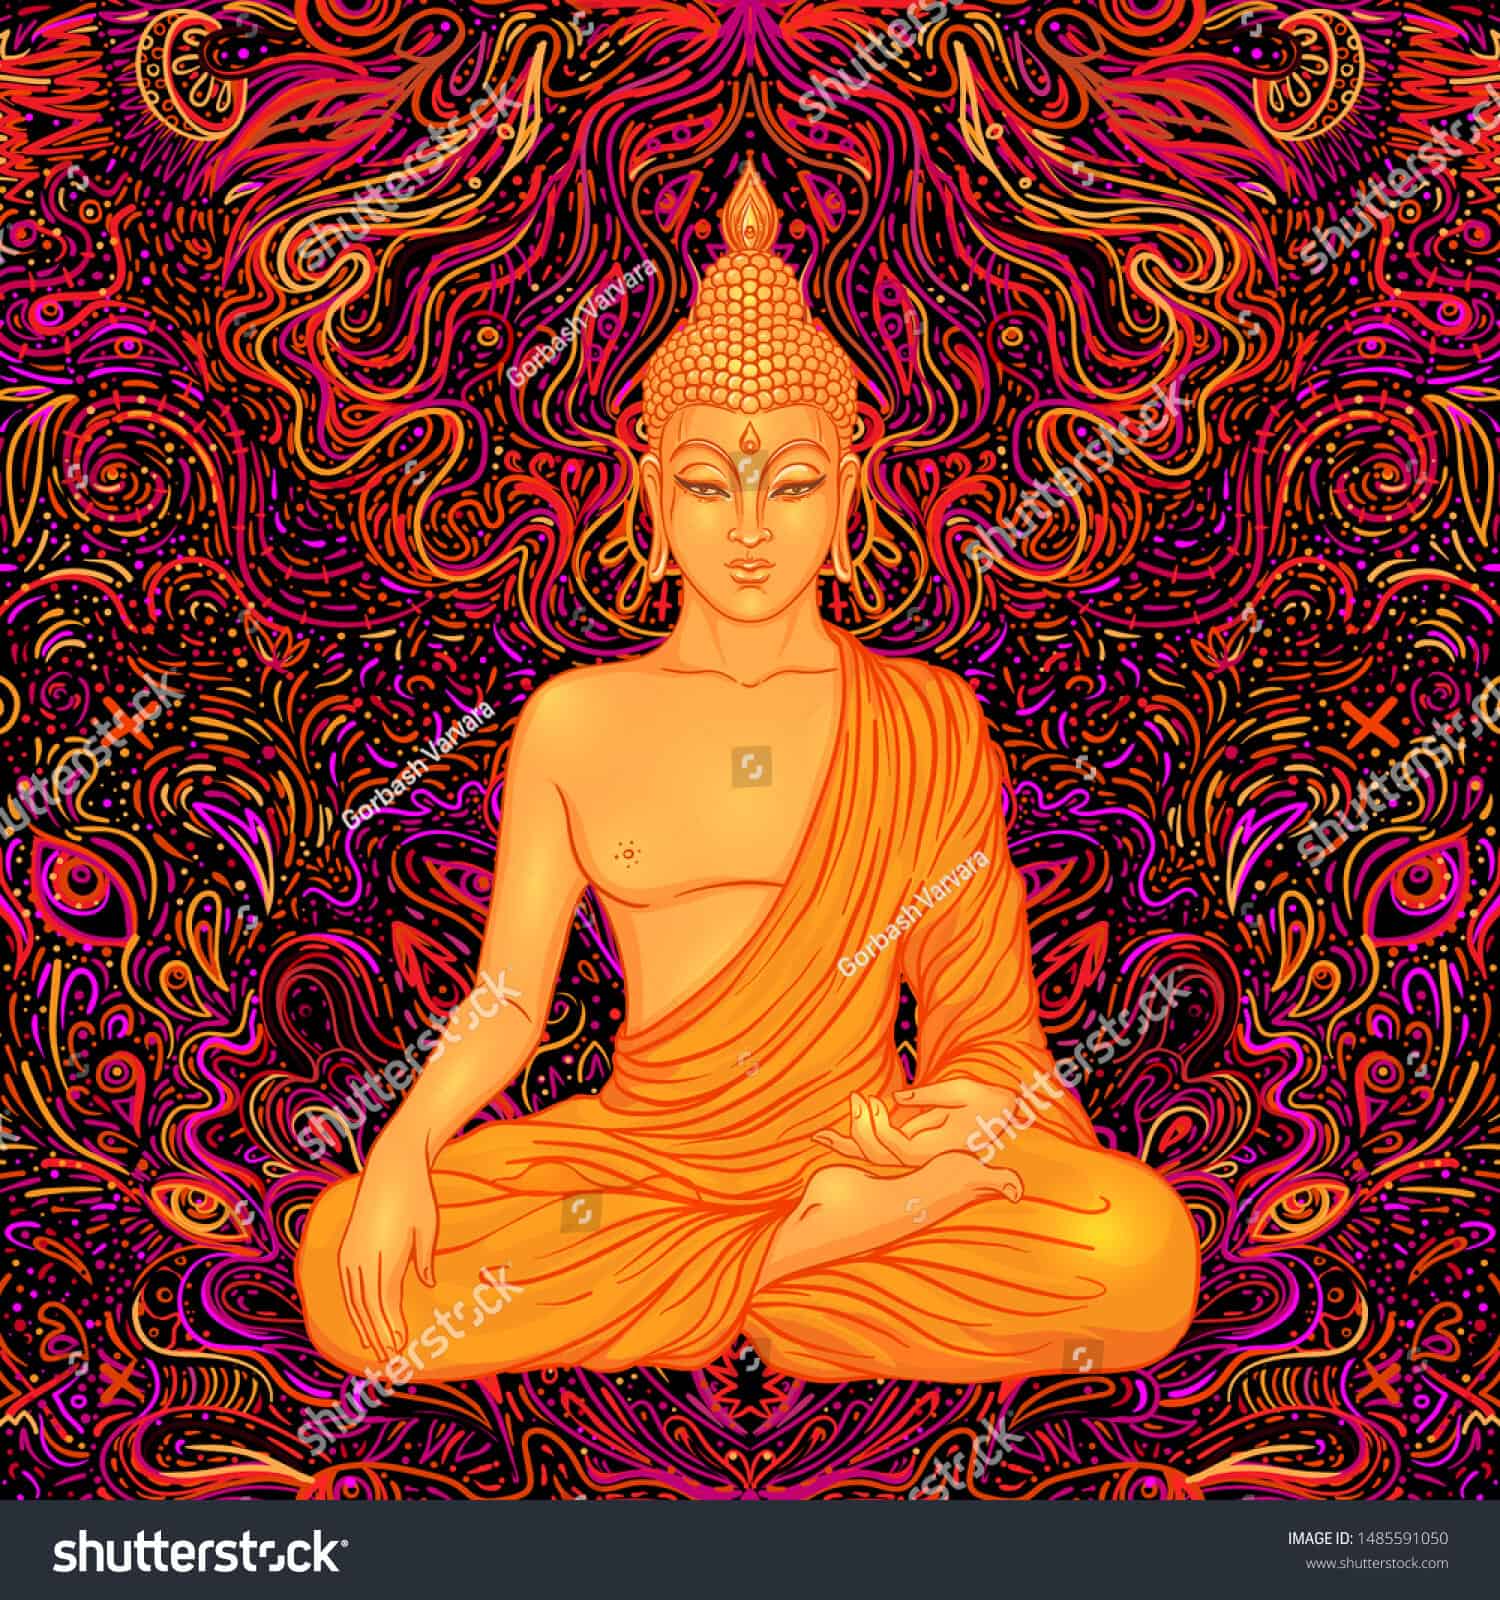 Hình ảnh phật giáo chất lượng cao: Hãy tận hưởng những hình ảnh đẹp về Phật Giáo với chất lượng cao nhất. Những hình ảnh này sẽ khiến bạn cảm thấy thư giãn và hứng khởi với sự đẹp đẽ của tôn giáo. Bạn sẽ không thể ngừng ngắm nhìn sự tuyệt vời của những hình ảnh này. Hãy bắt đầu khám phá ngay bây giờ!